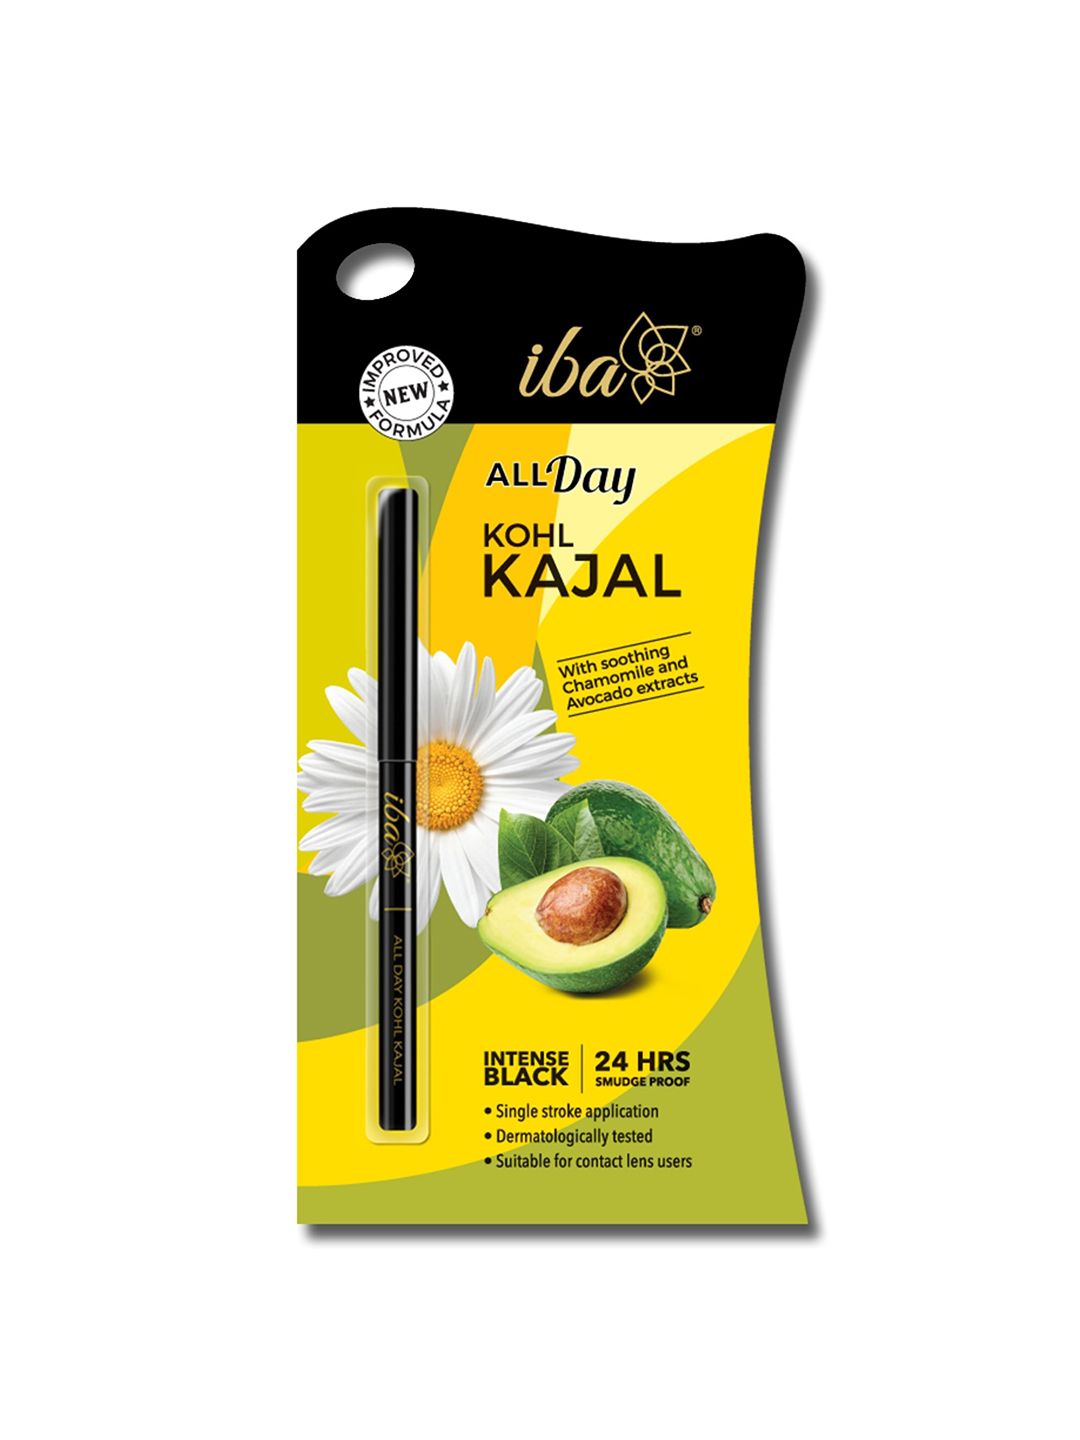 Iba HALAL CARE All Day Kohl Kajal - Intense Black 0.35g Price in India